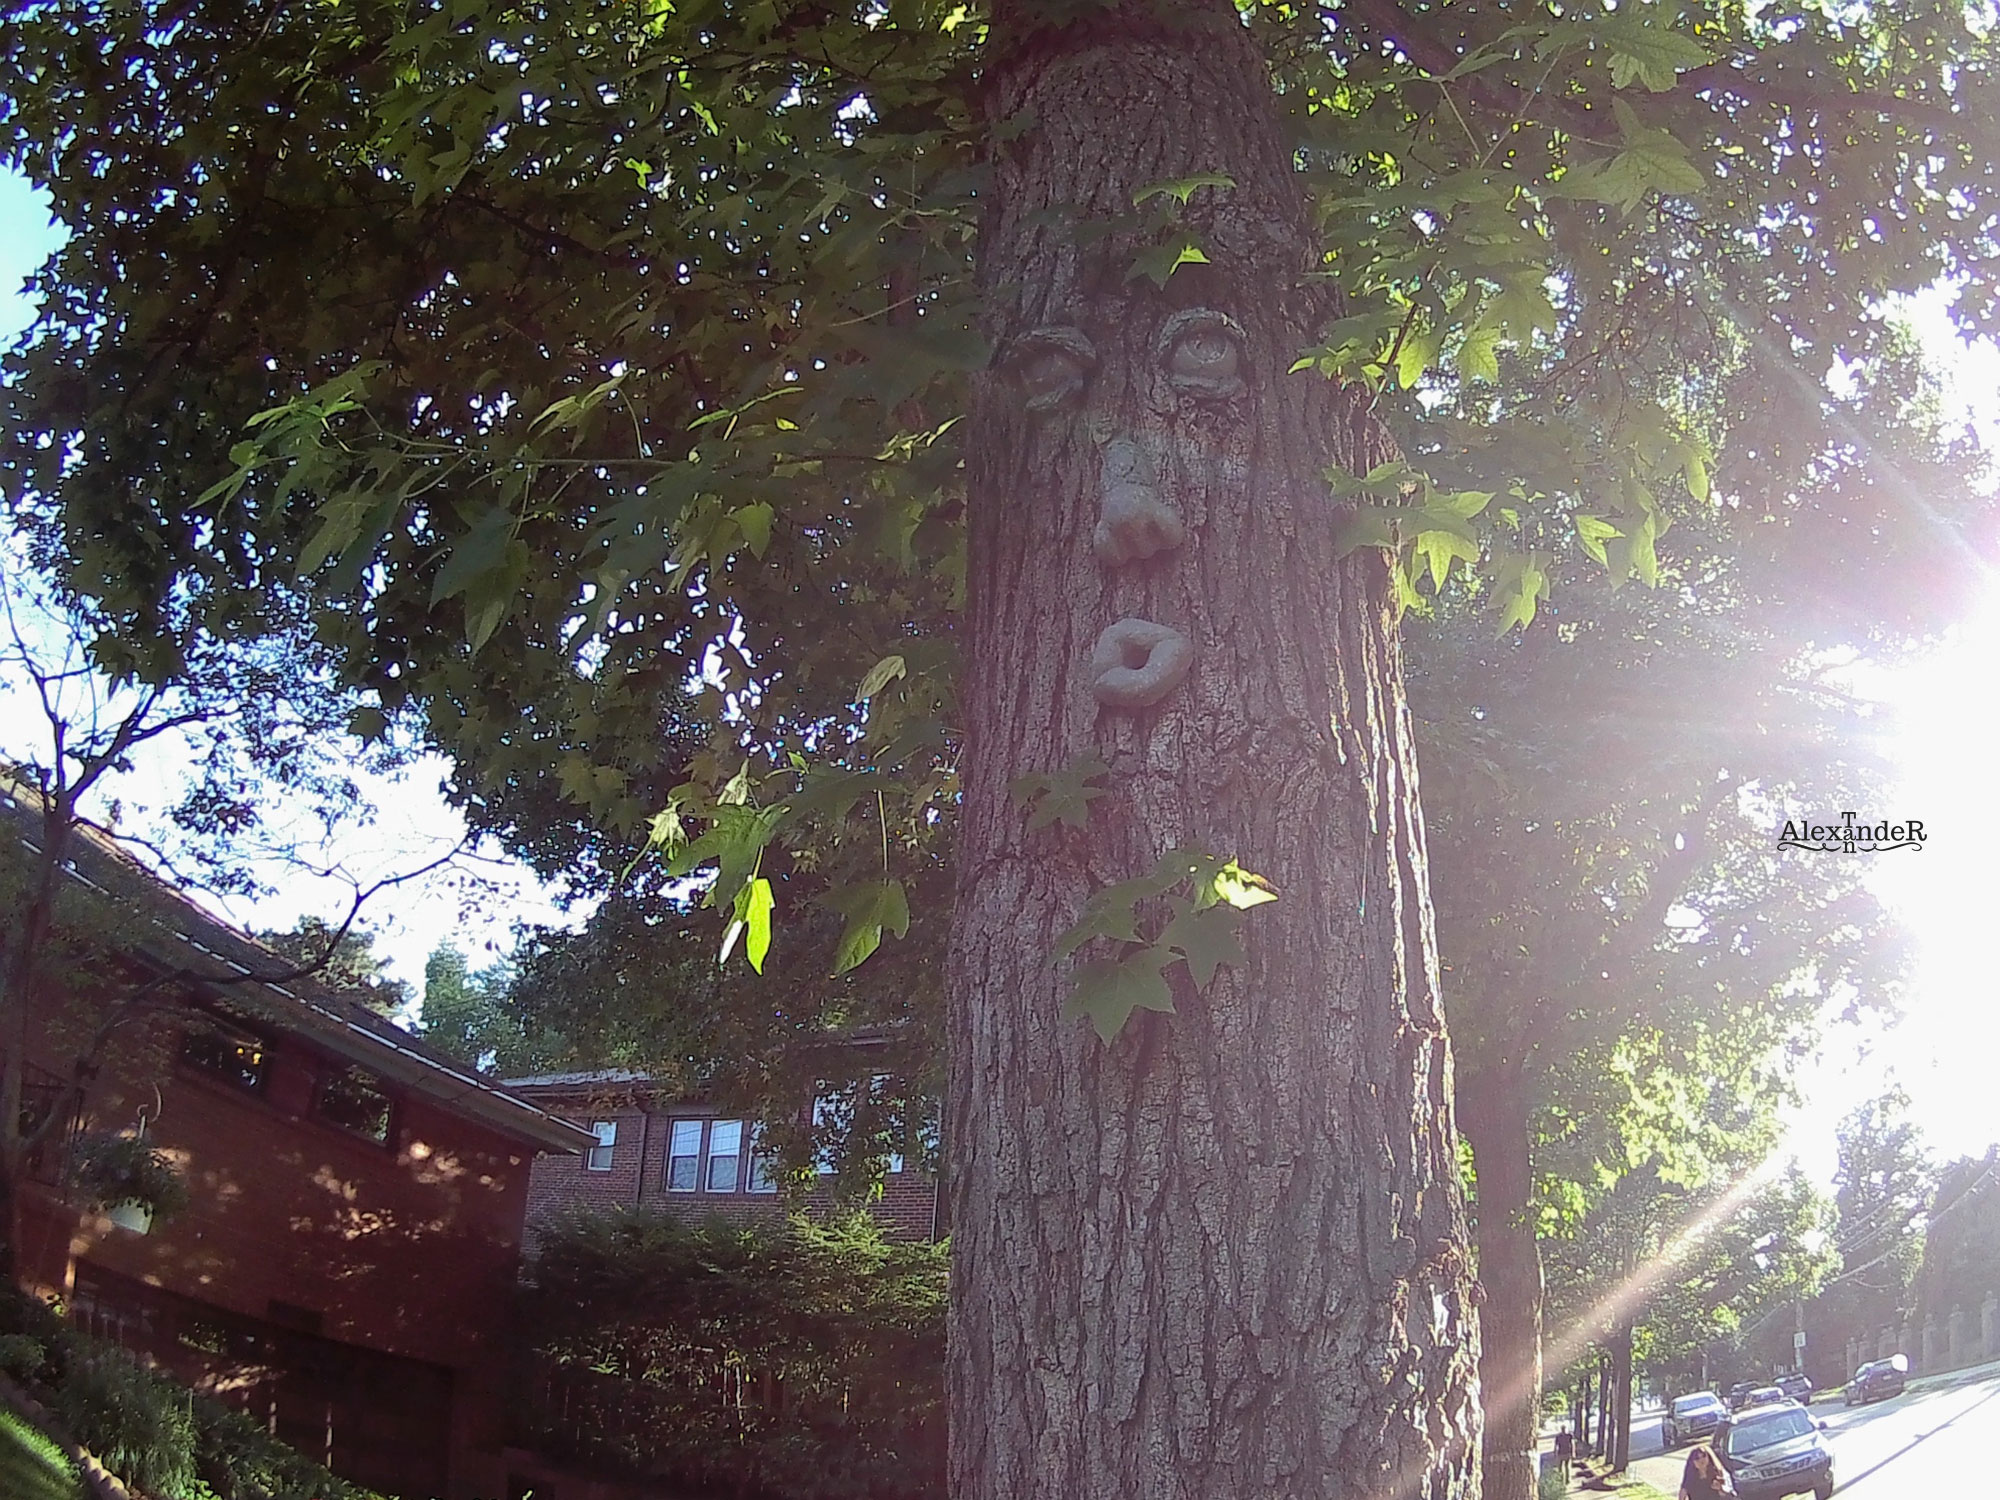 Tree Man